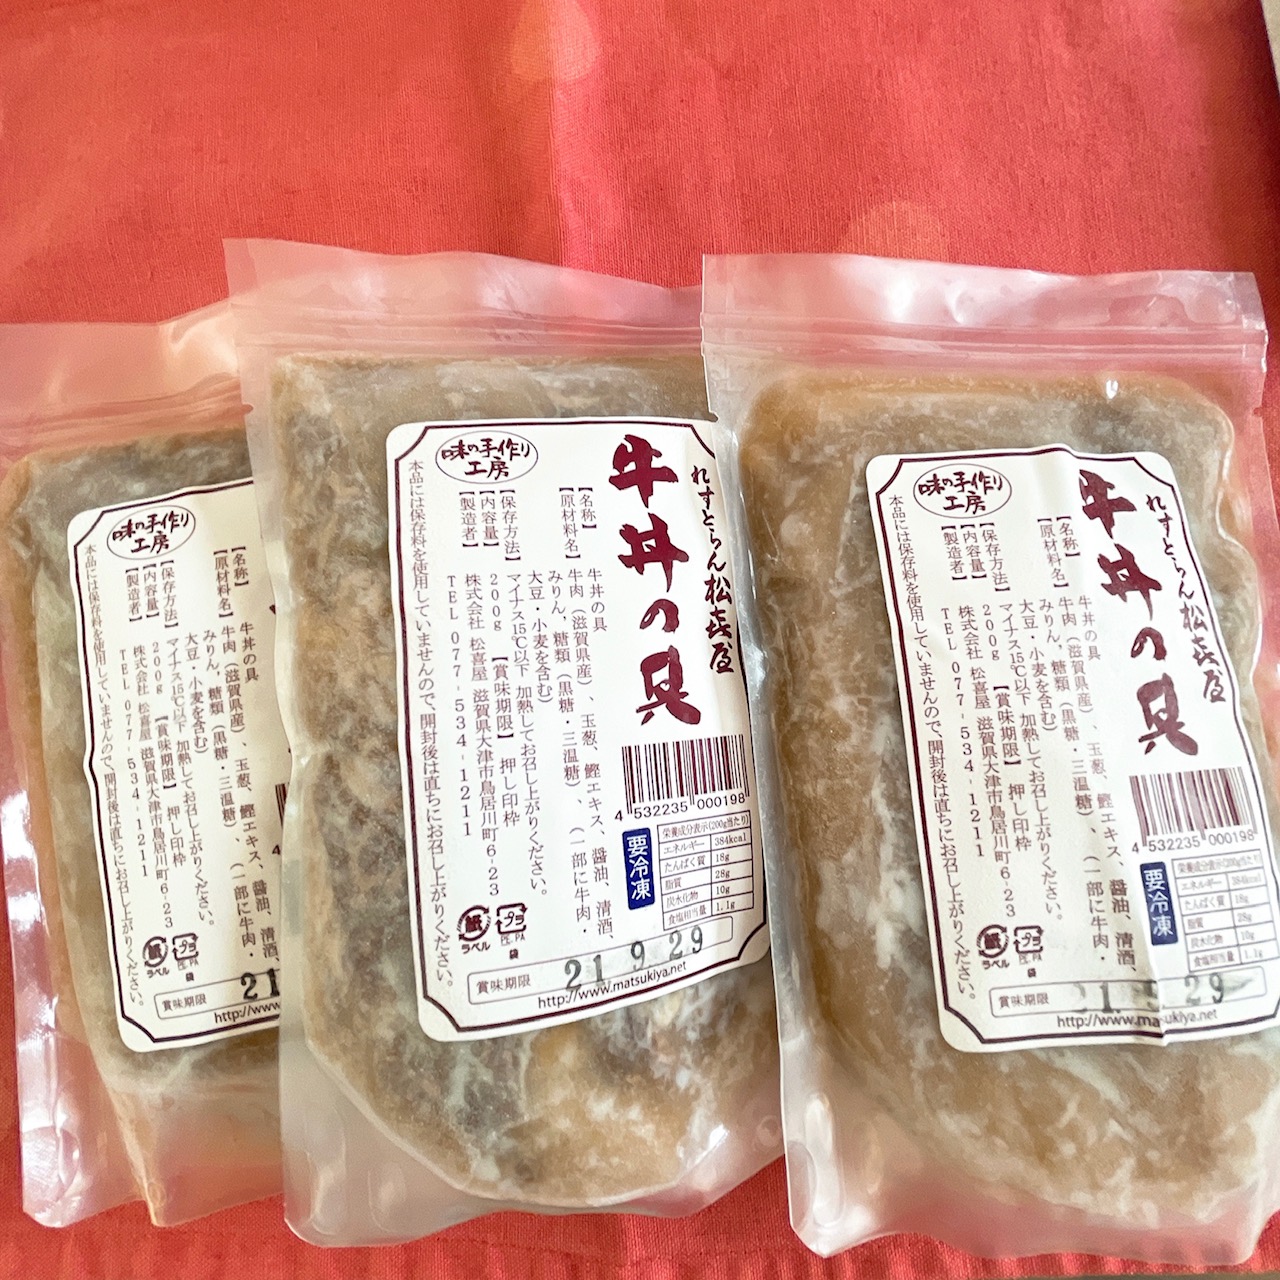 〈松喜屋〉の「近江牛肉 牛丼の具3食入り」2,916円